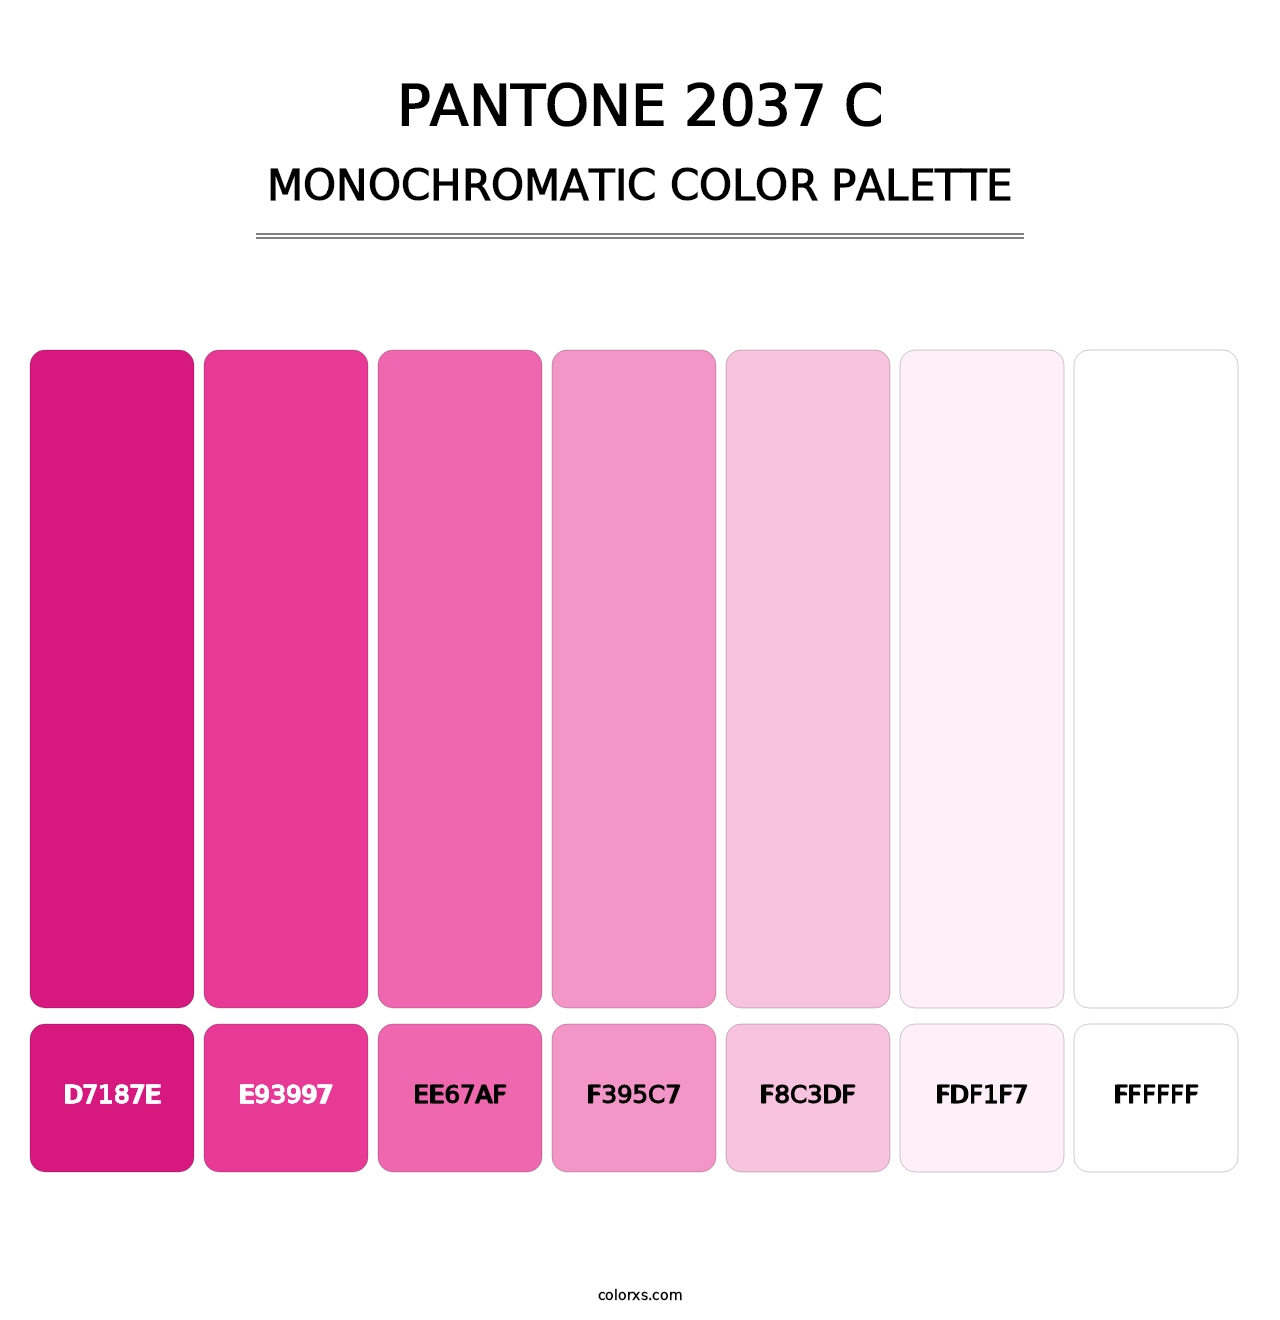 PANTONE 2037 C - Monochromatic Color Palette